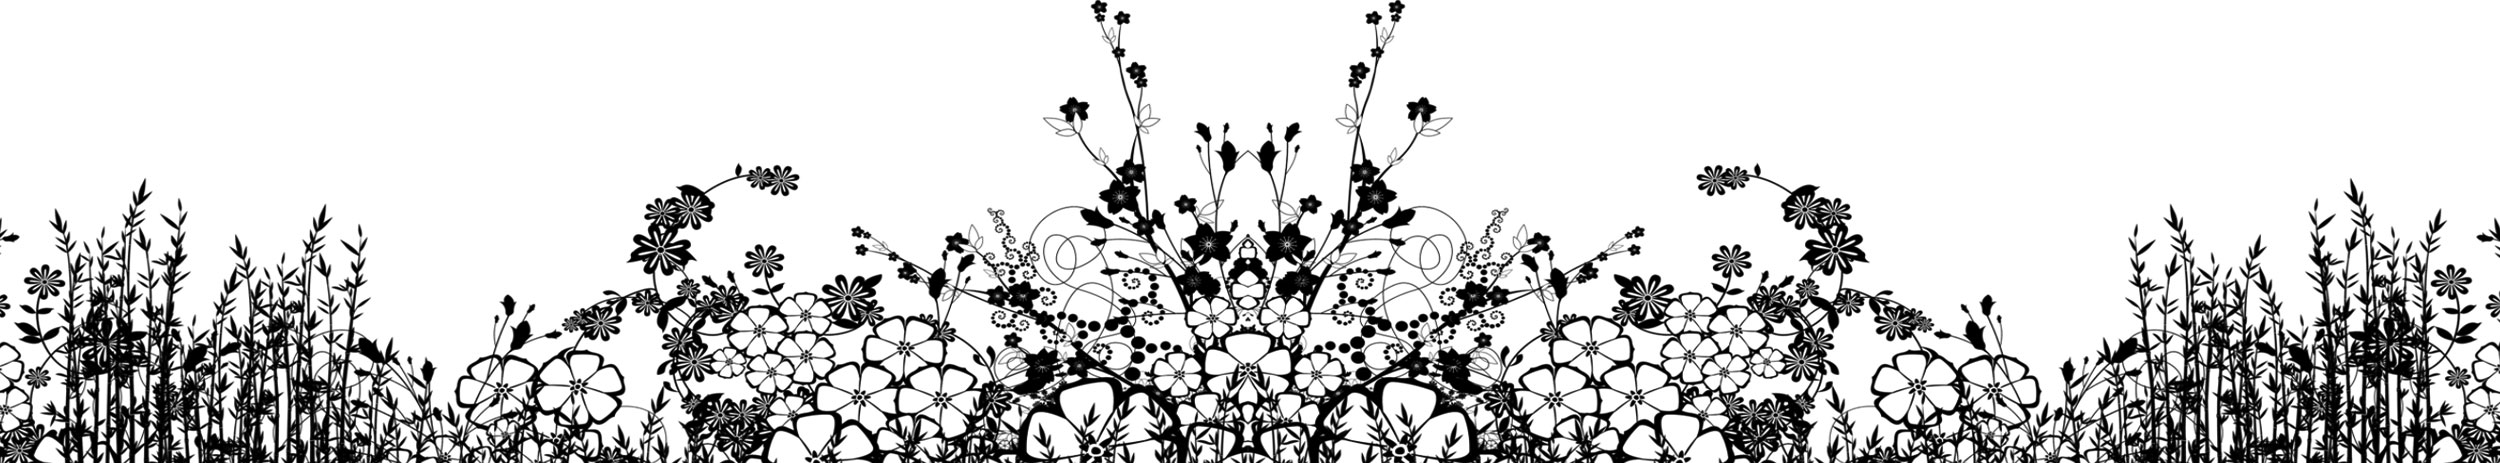 花のイラスト フリー素材 白黒 モノクロno 625 白黒 草花畑